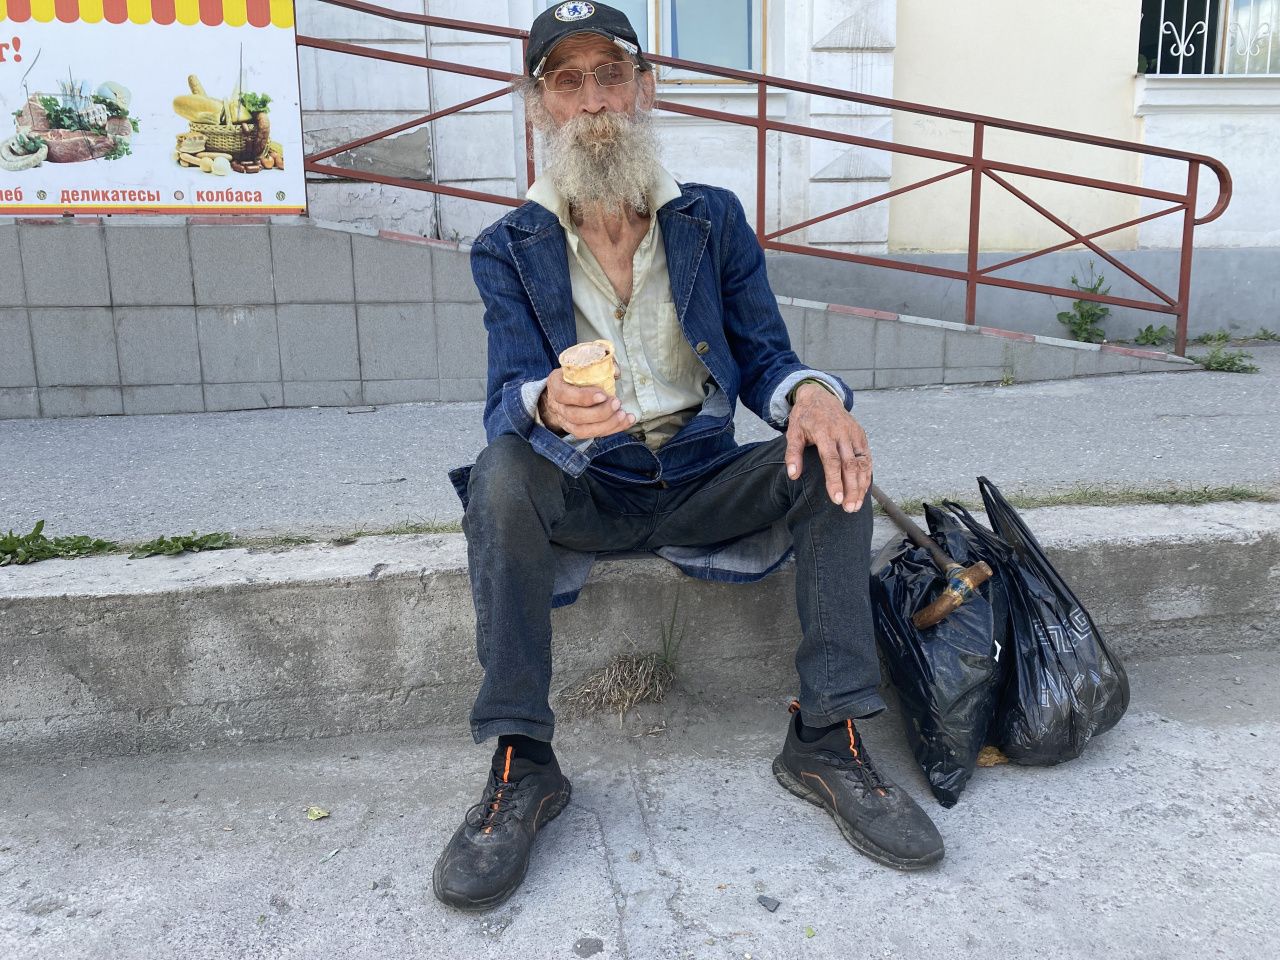 “Без денег ты не человек”. На улицах Серова пенсионер просит милостыню